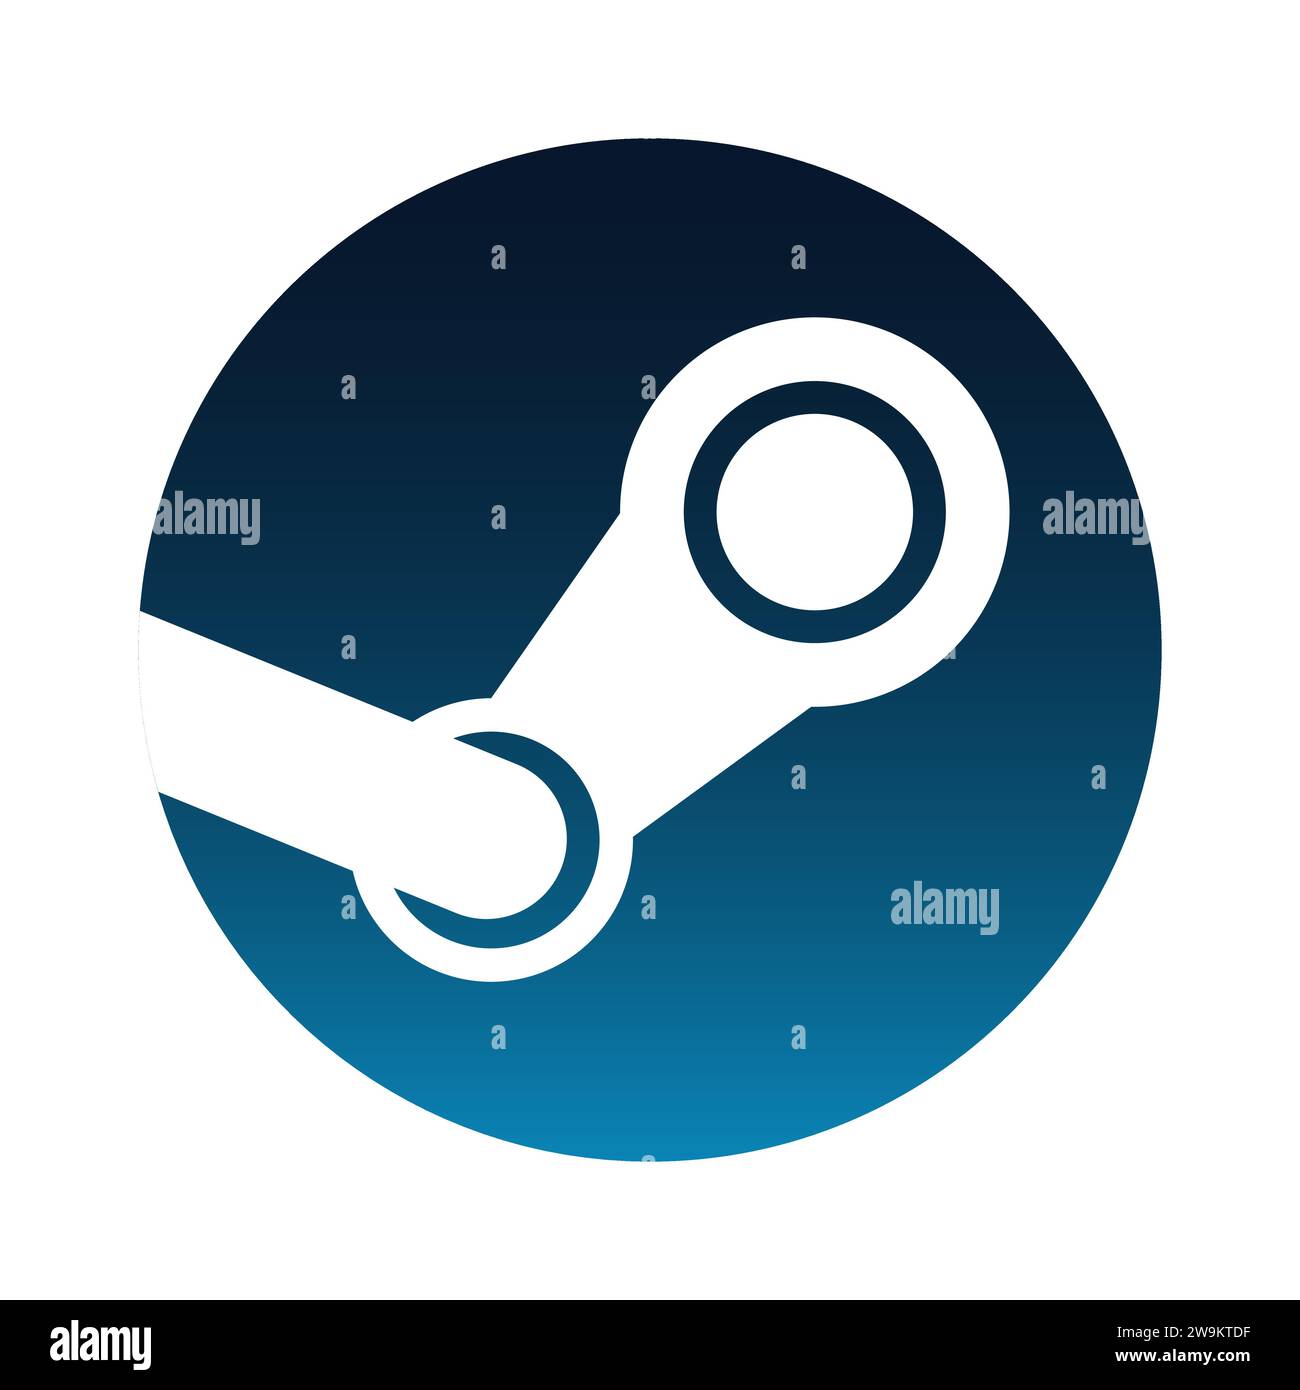 Logo Steam. Servizio di distribuzione digitale di videogiochi. Illustrazione editoriale isolata su sfondo bianco Illustrazione Vettoriale